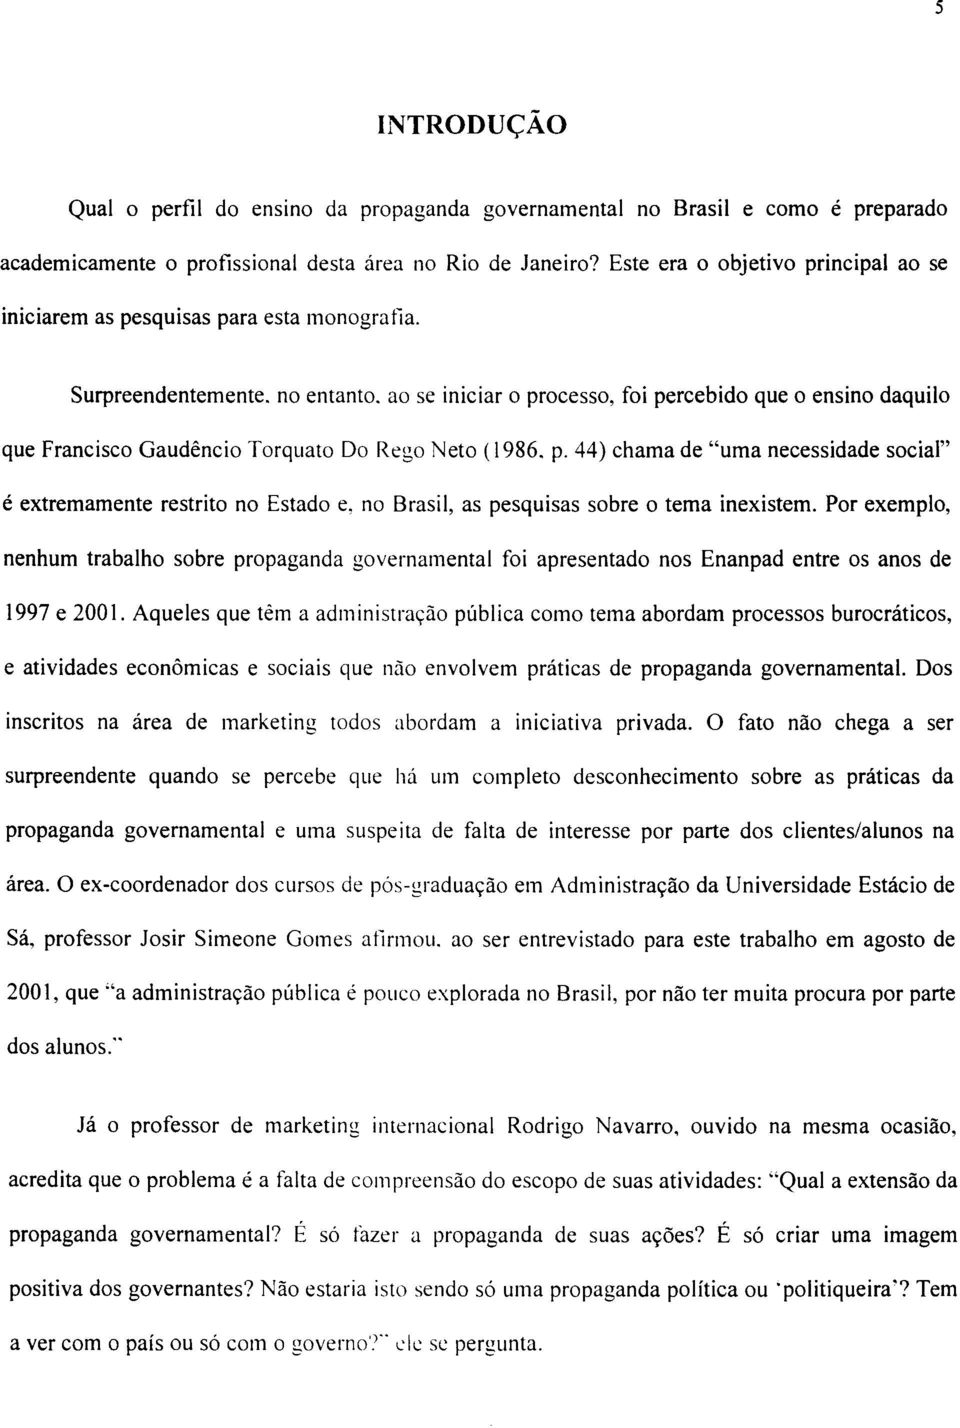 ao se iniciar o processo, foi percebido que o ensino daquilo que Francisco Gaudêncio Torquato Do Rego Neto (1986. p. 44) chama de "uma necessidade social" é extremamente restrito no Estado e, no Brasil, as pesquisas sobre o tema inexistem.